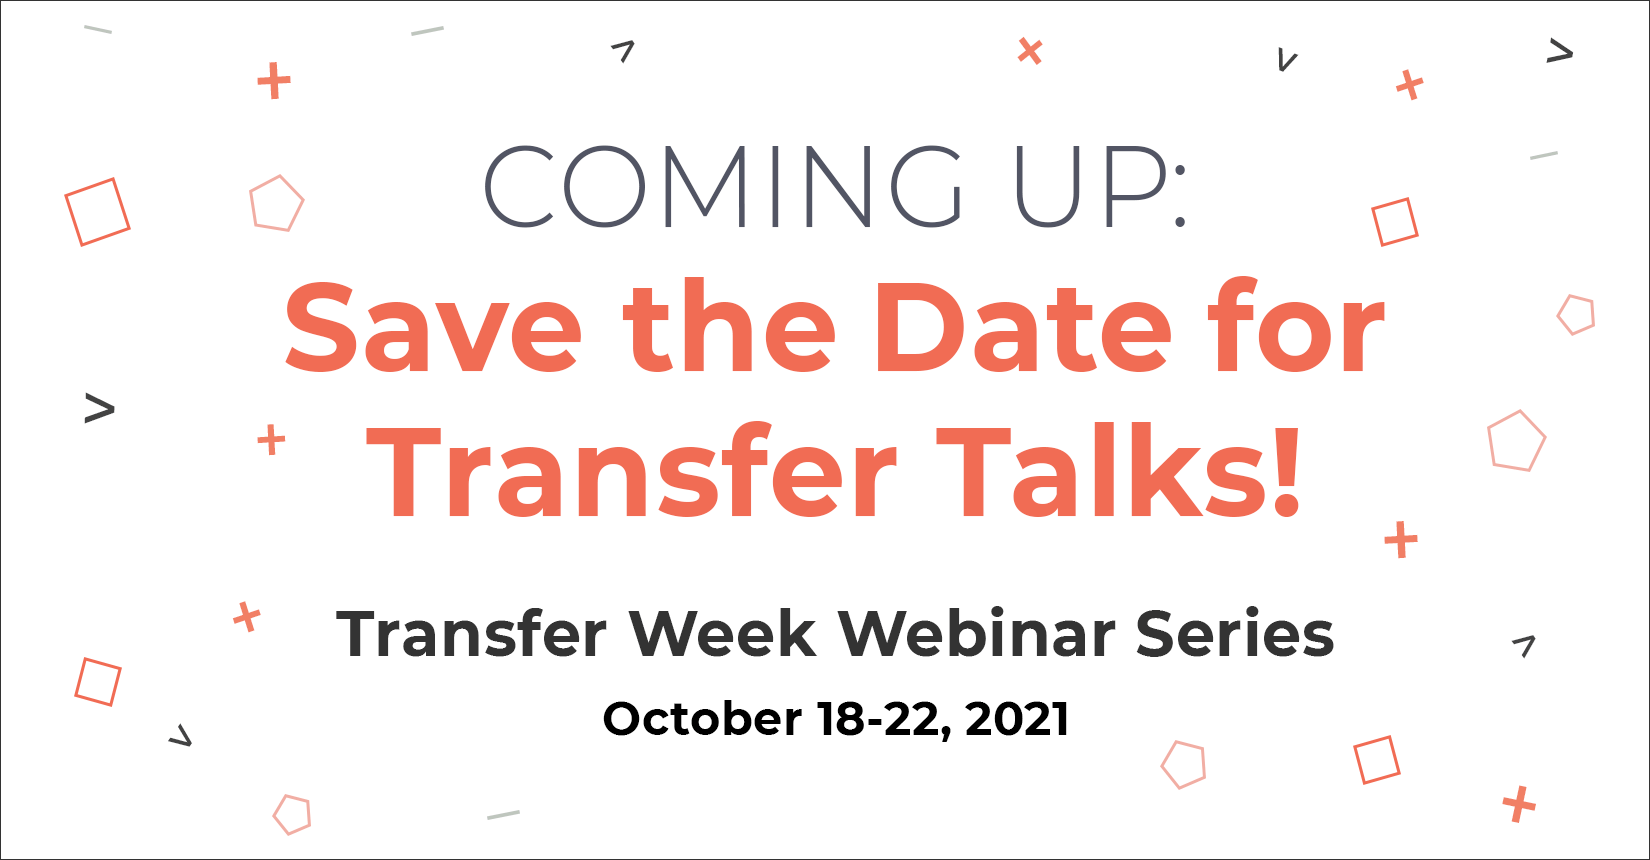 transfer-week-webinar-series-2021-coming-up